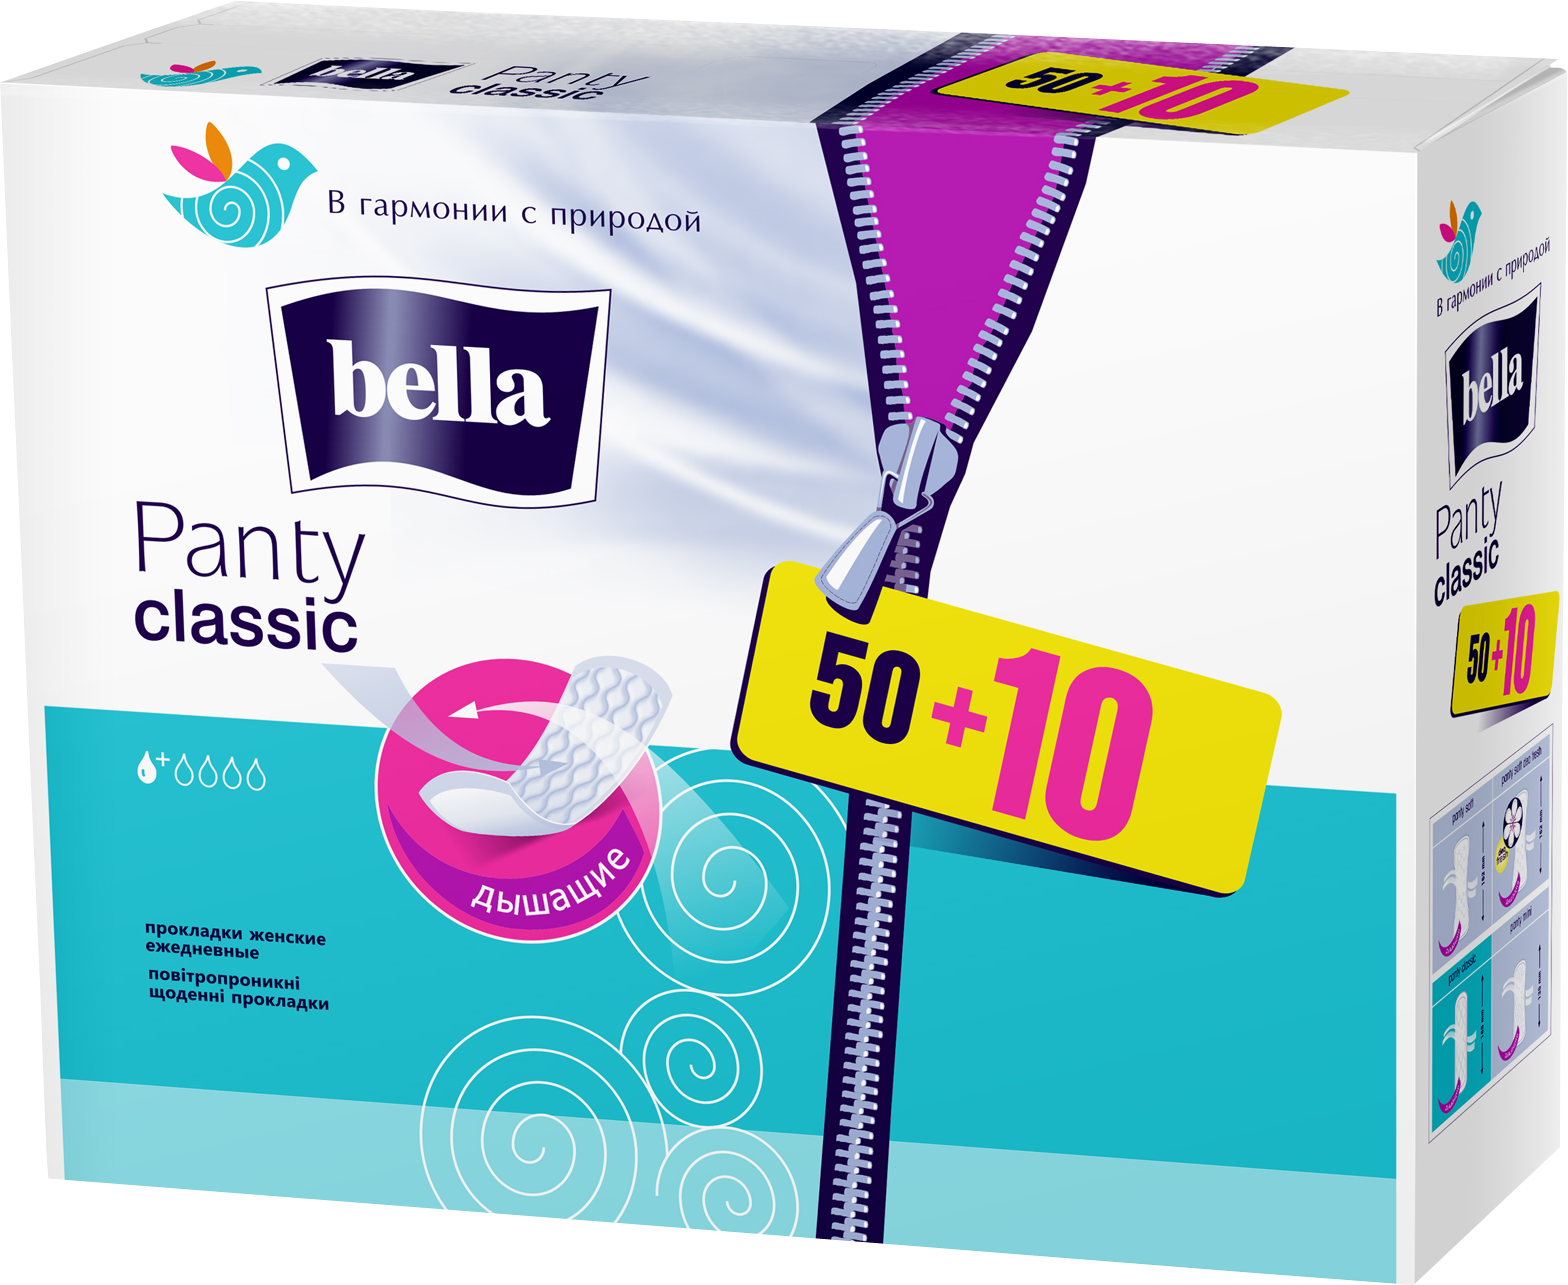 Щоденні прокладки Bella Panty Classic, 50+10 шт. - фото 1